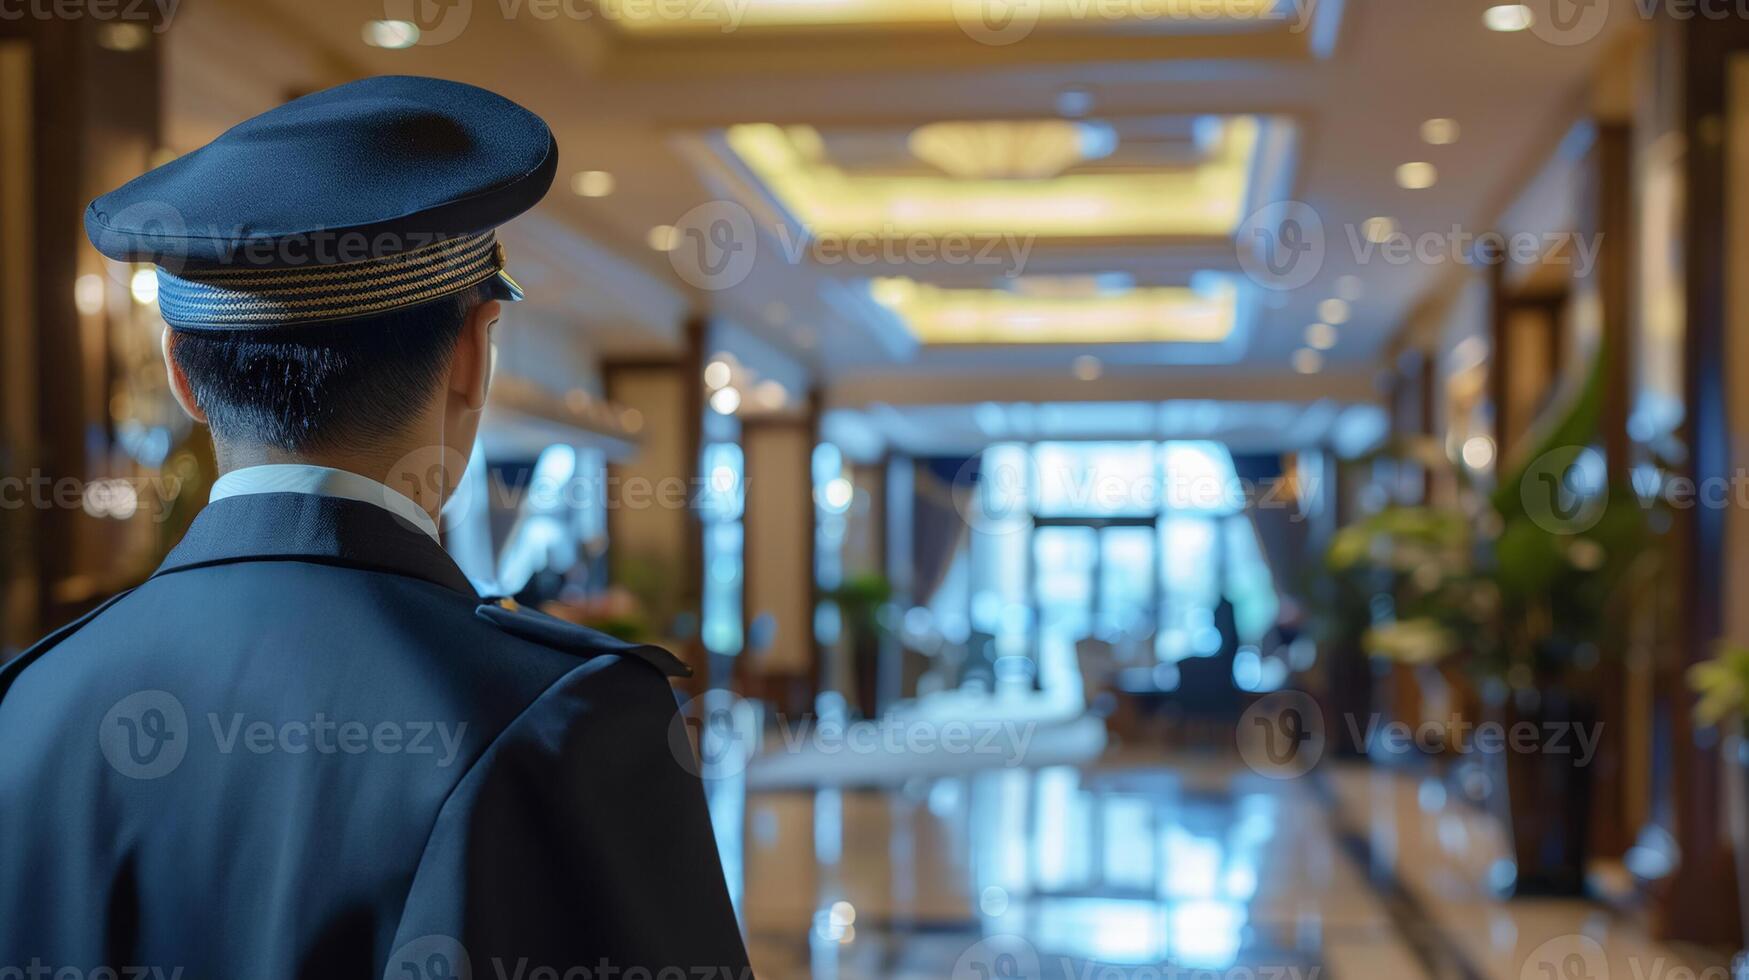 uniformerad hotell dörrvakt avvaktan gäster i en lyx lobby, frammanande begrepp av gästfrihet, service industri, och resa boende foto